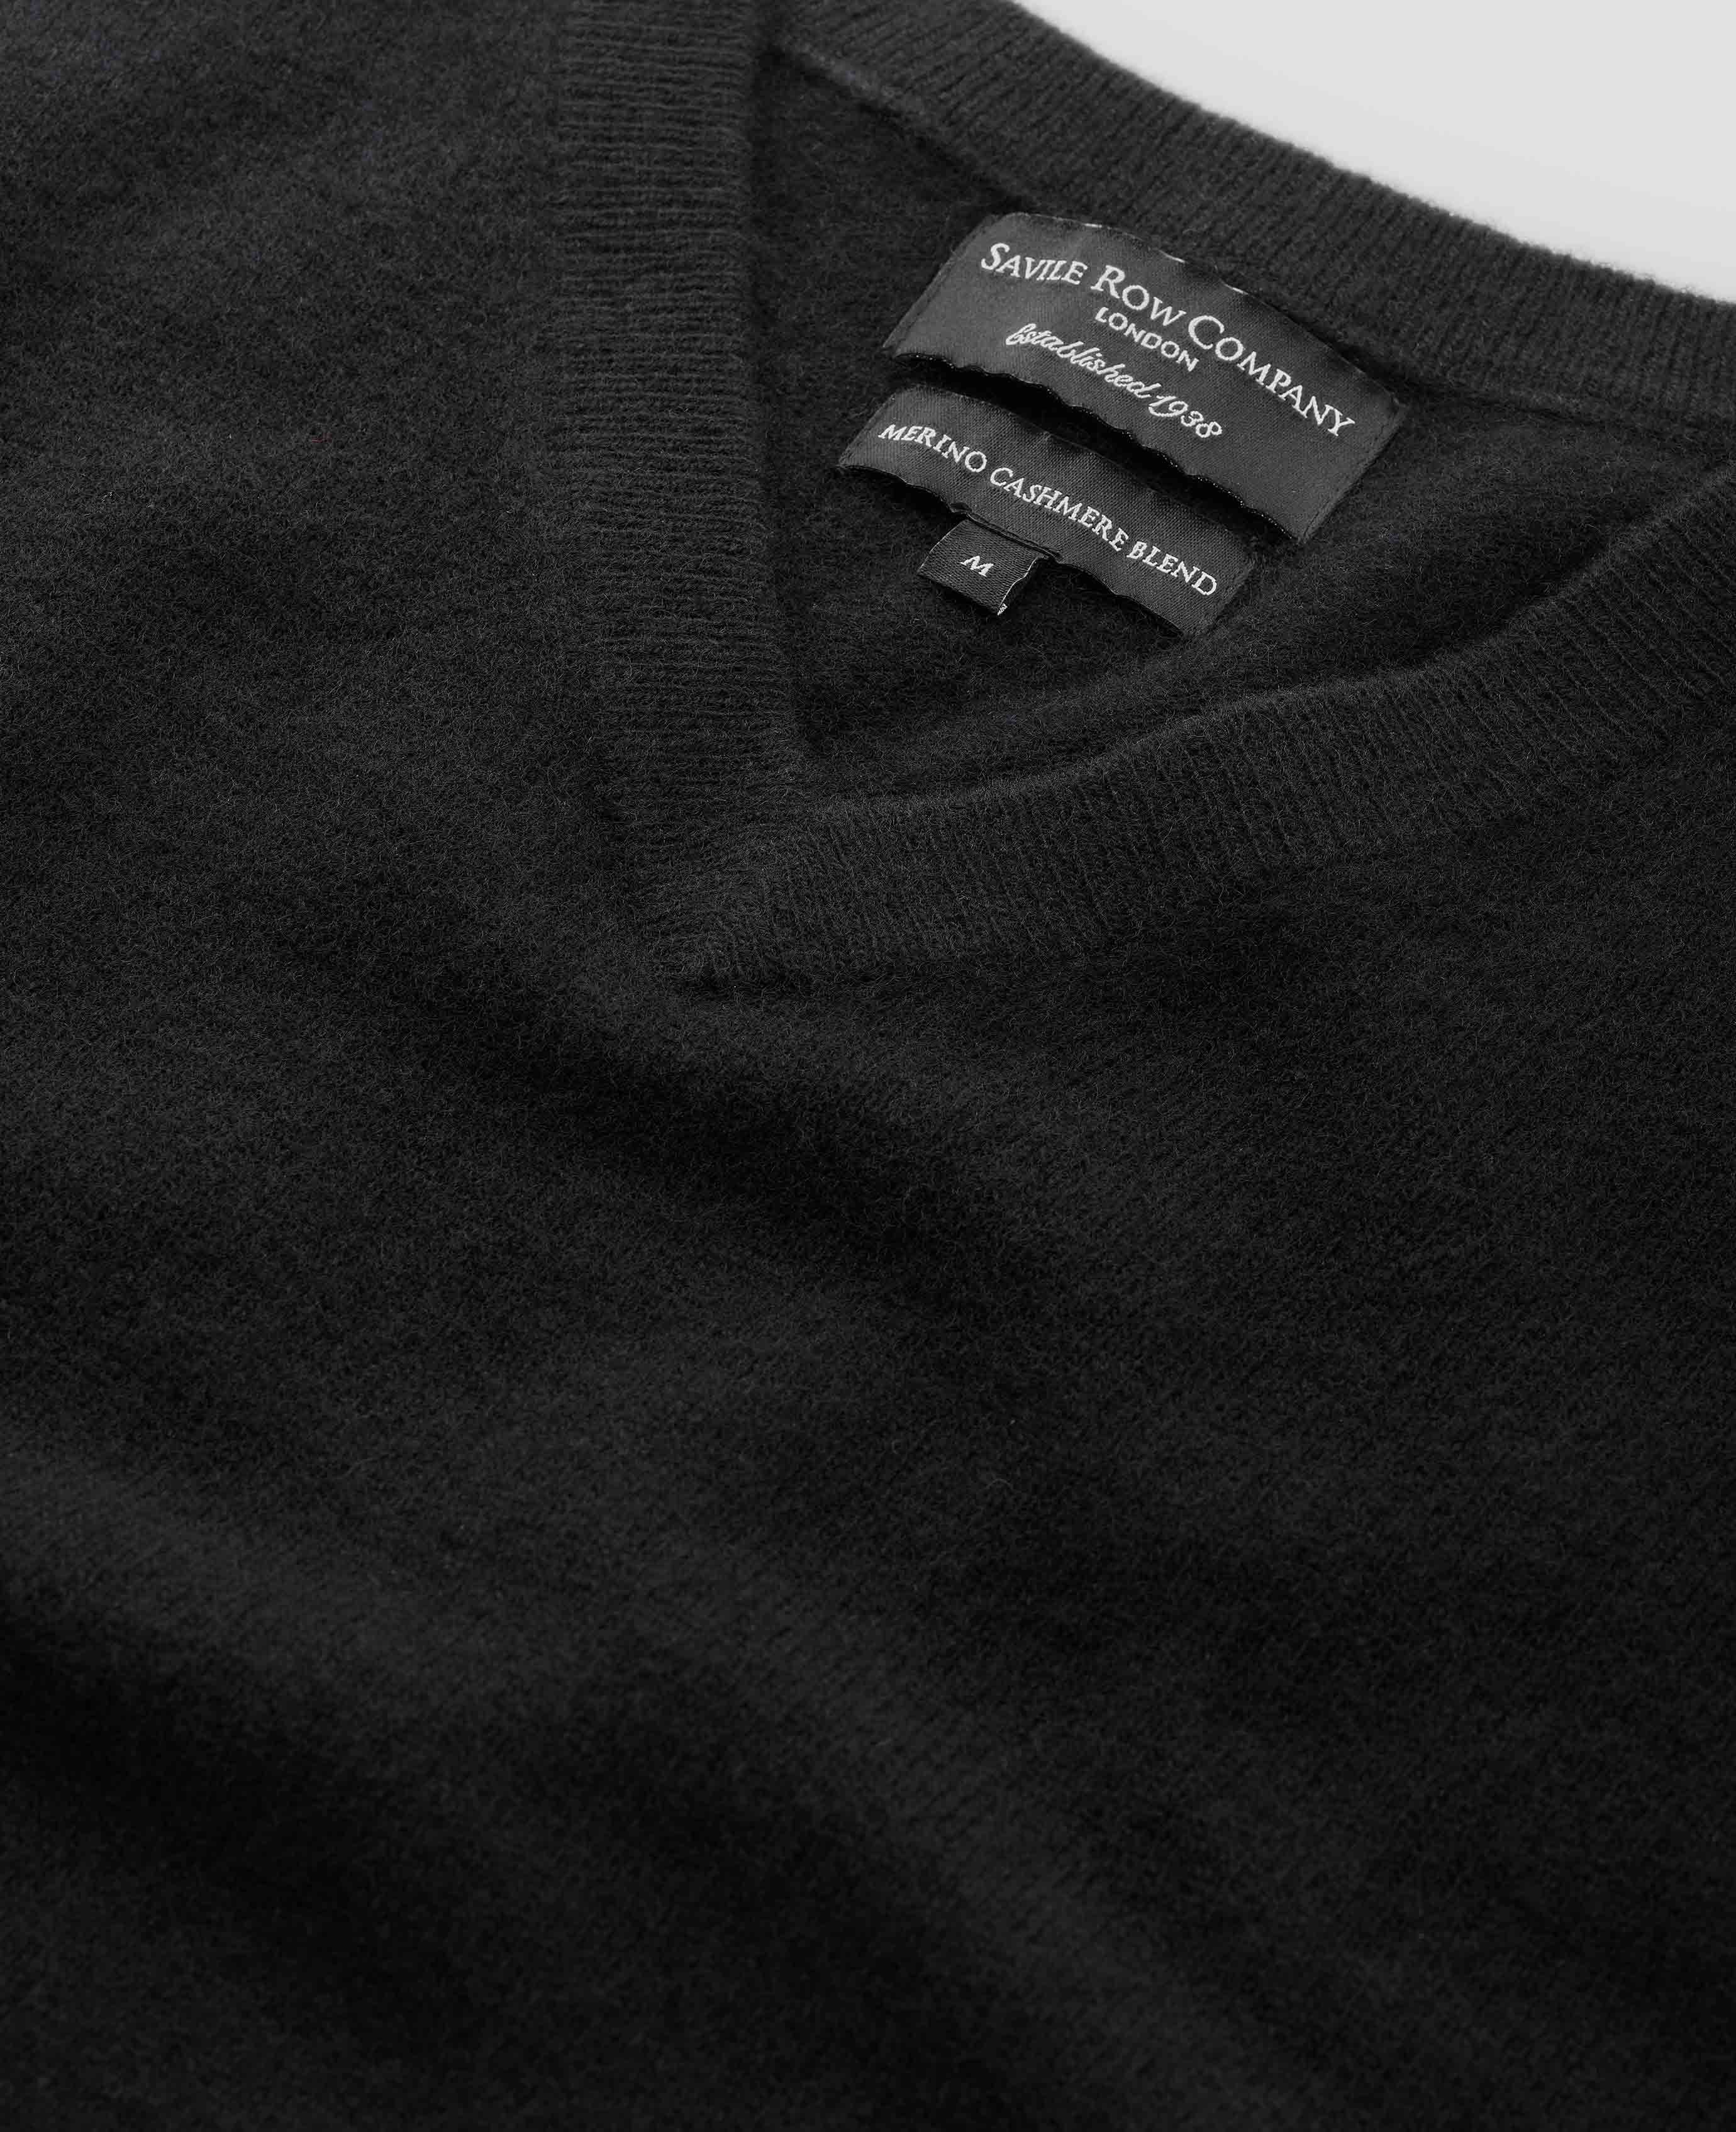 Men’s Wool Cashmere V-Neck Jumper in Black | Savile Row Co